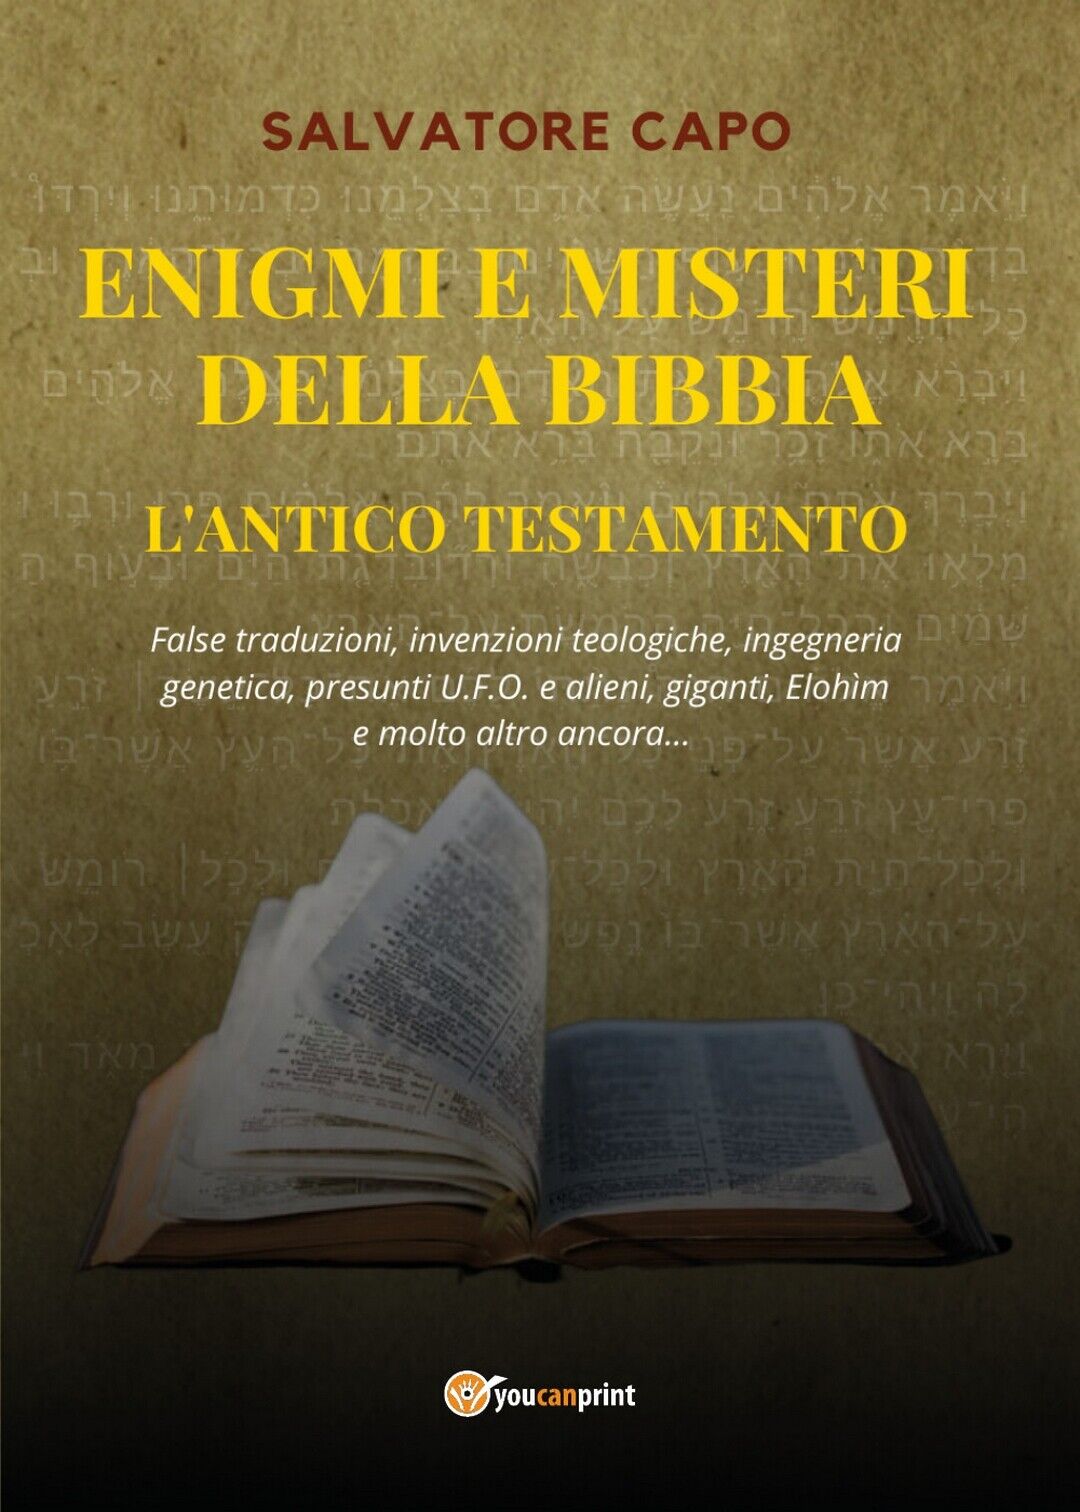 Enigmi e Misteri della Bibbia - L'Antico Testamento  di Salvatore Capo,  2020